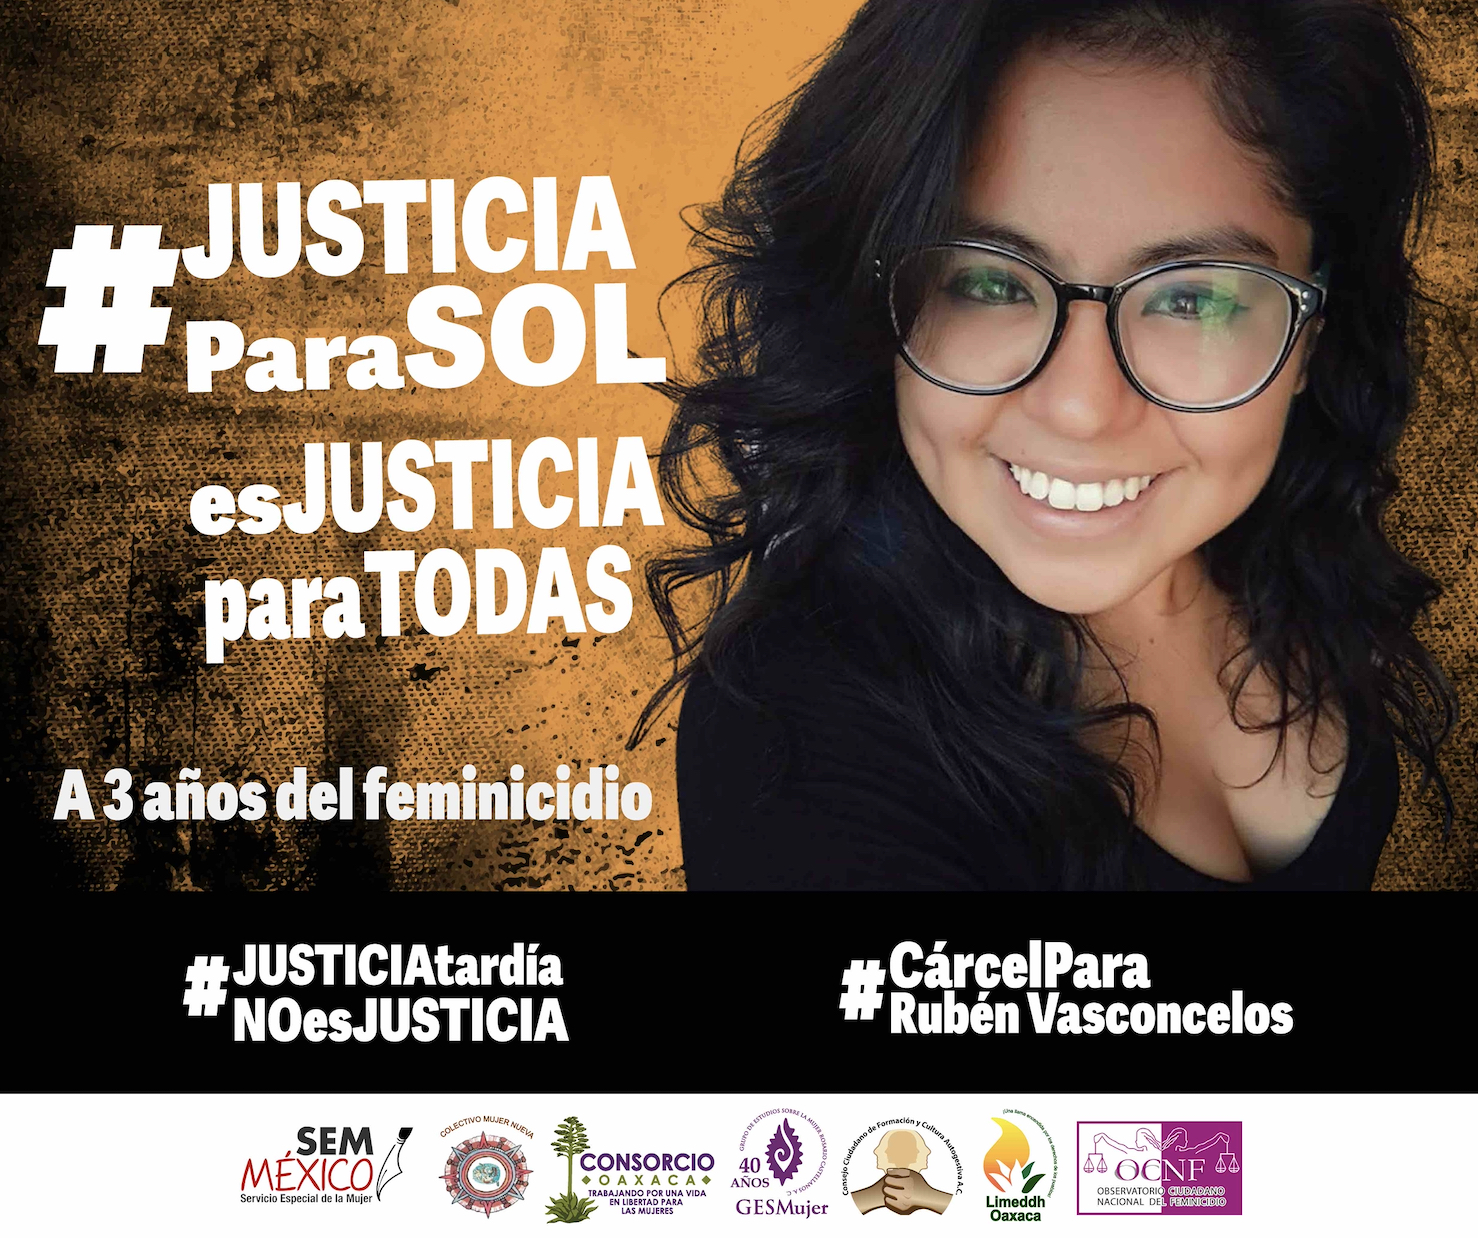 Organizaciones civiles y feministas lanzan campaña “Justicia Para Sol es Justicia para Todas” a 3 años del feminicidio de la fotoperiodista